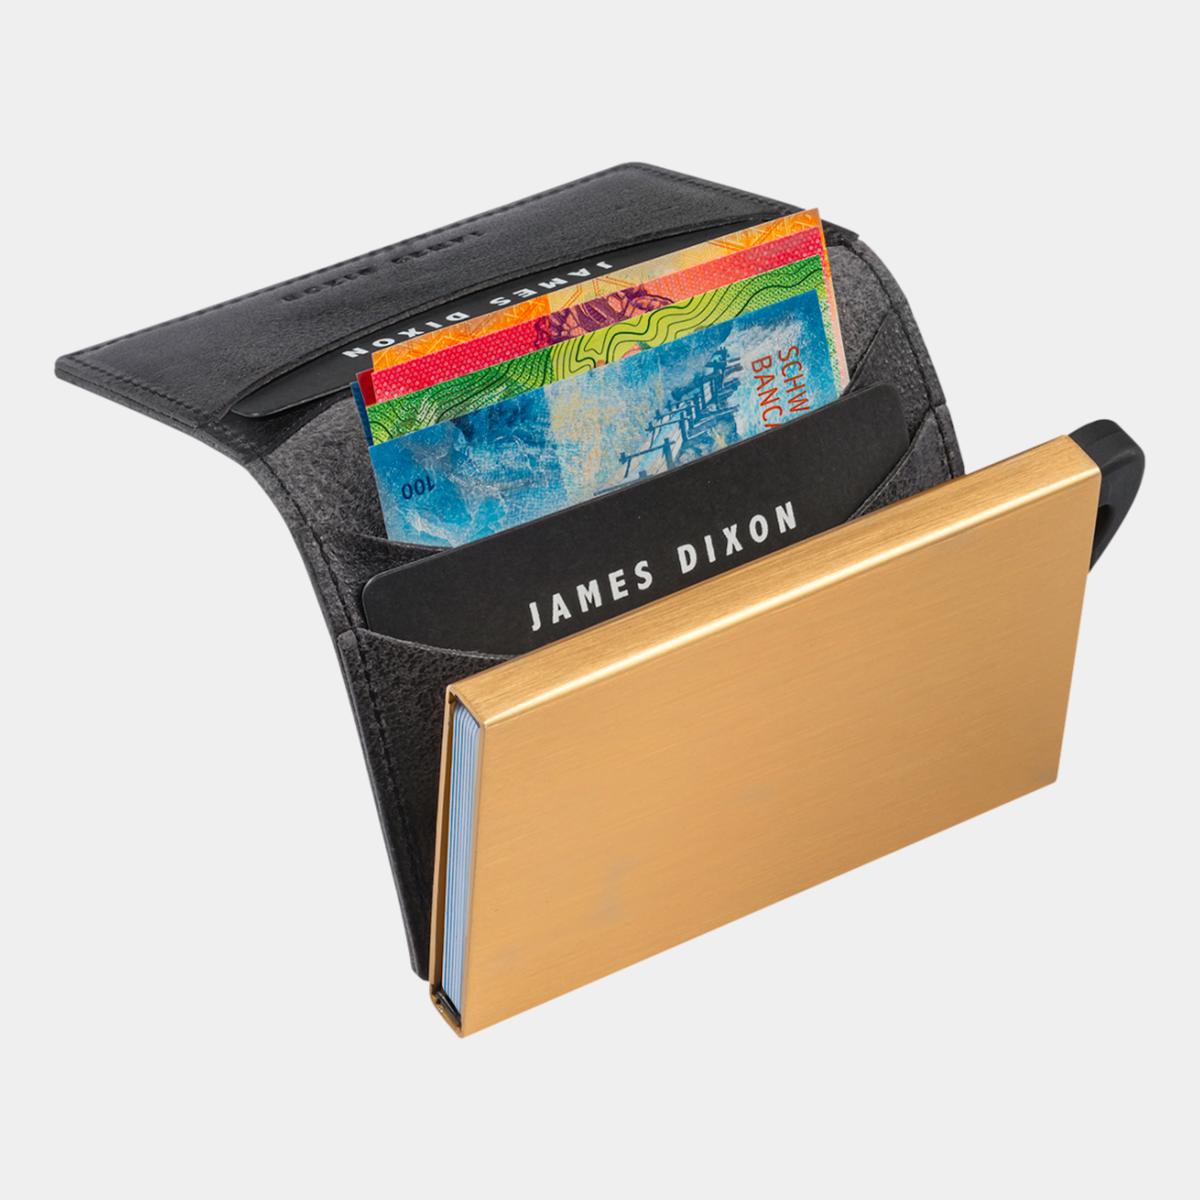 jd0060 james dixon puro raw black gold wallet notes